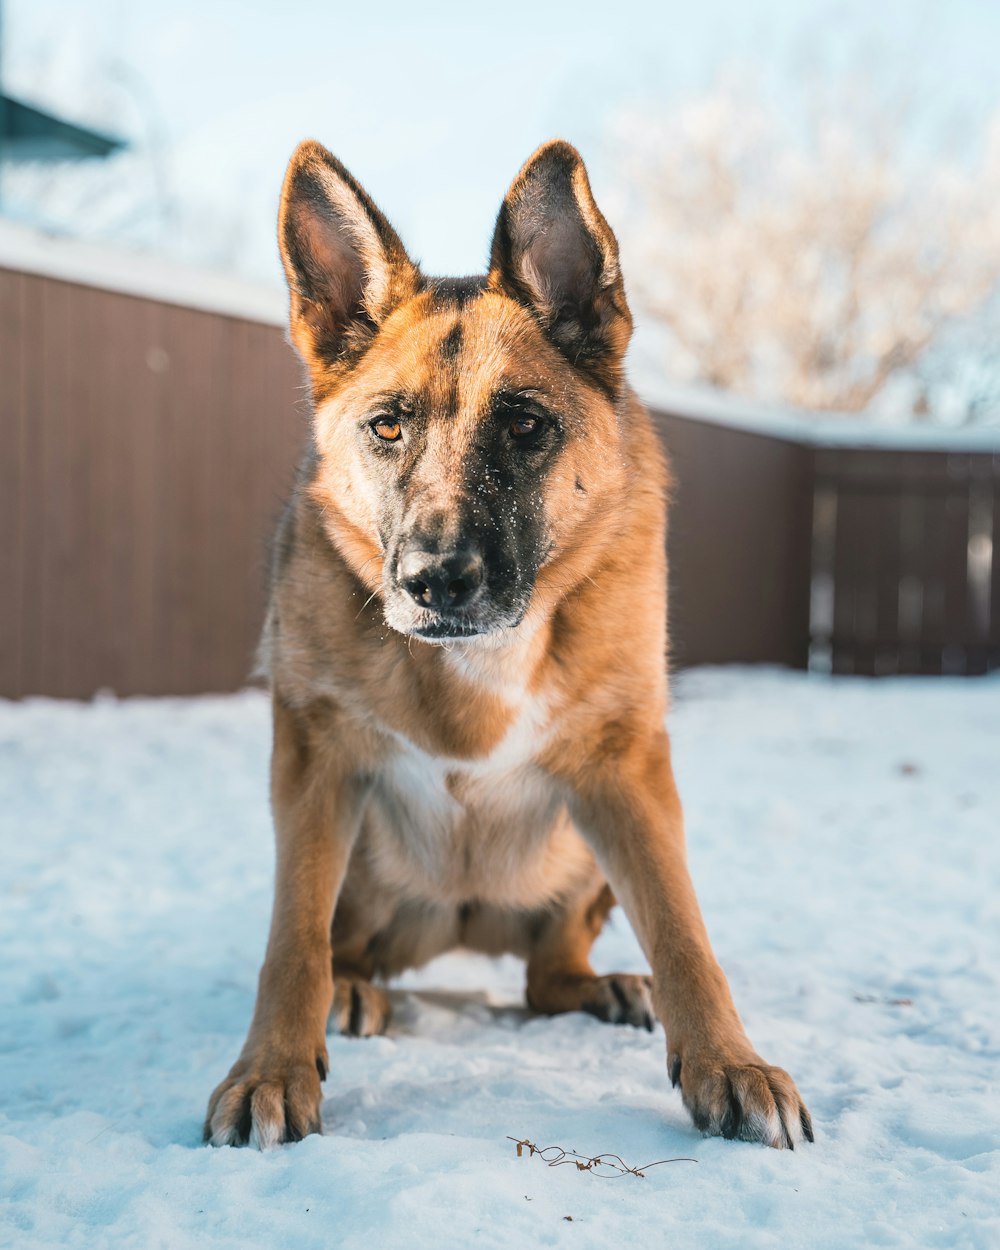 cane a pelo corto marrone e nero su terreno coperto di neve durante il giorno